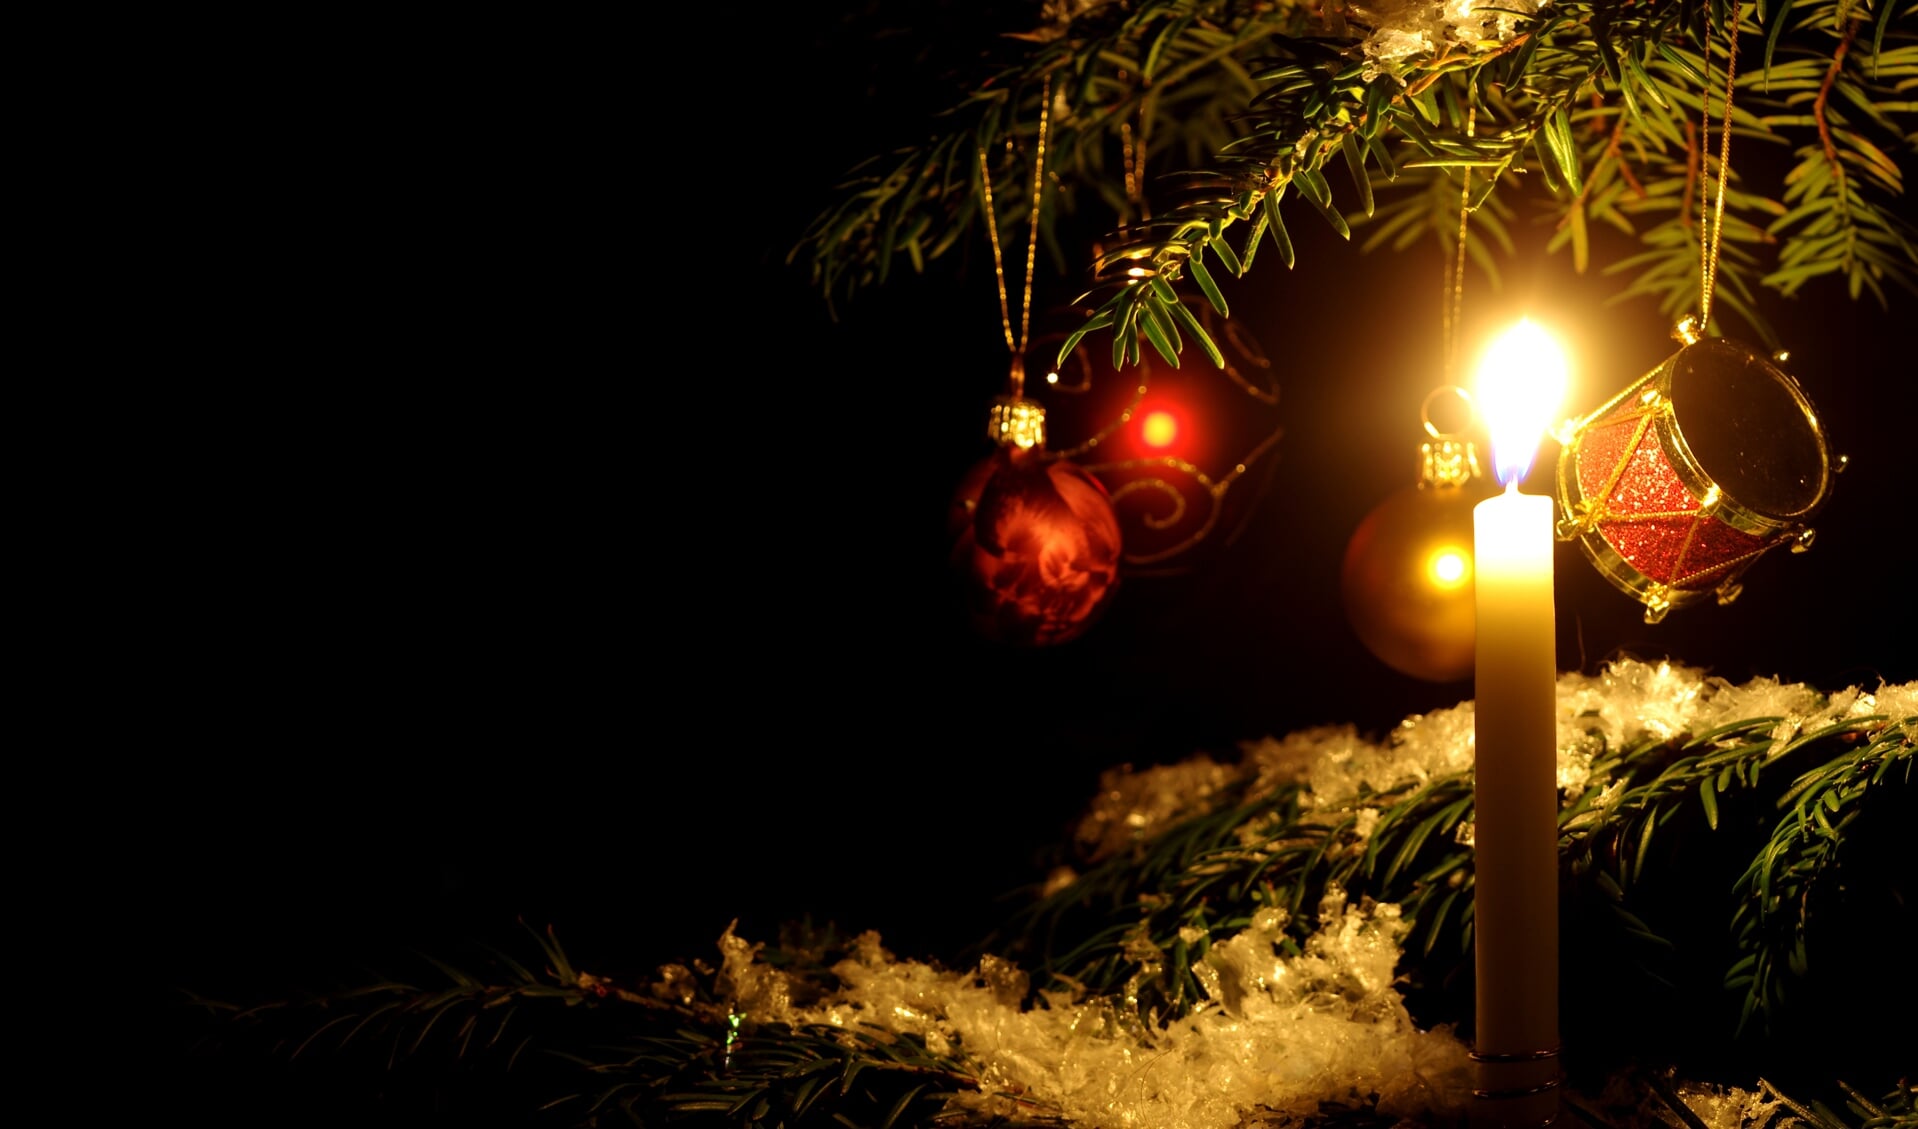 Elk jaar worden er in december bij de entree van het crematorium een aantal kerstbomen geplaatst waar bezoekers een kerstbal in kunnen hangen.